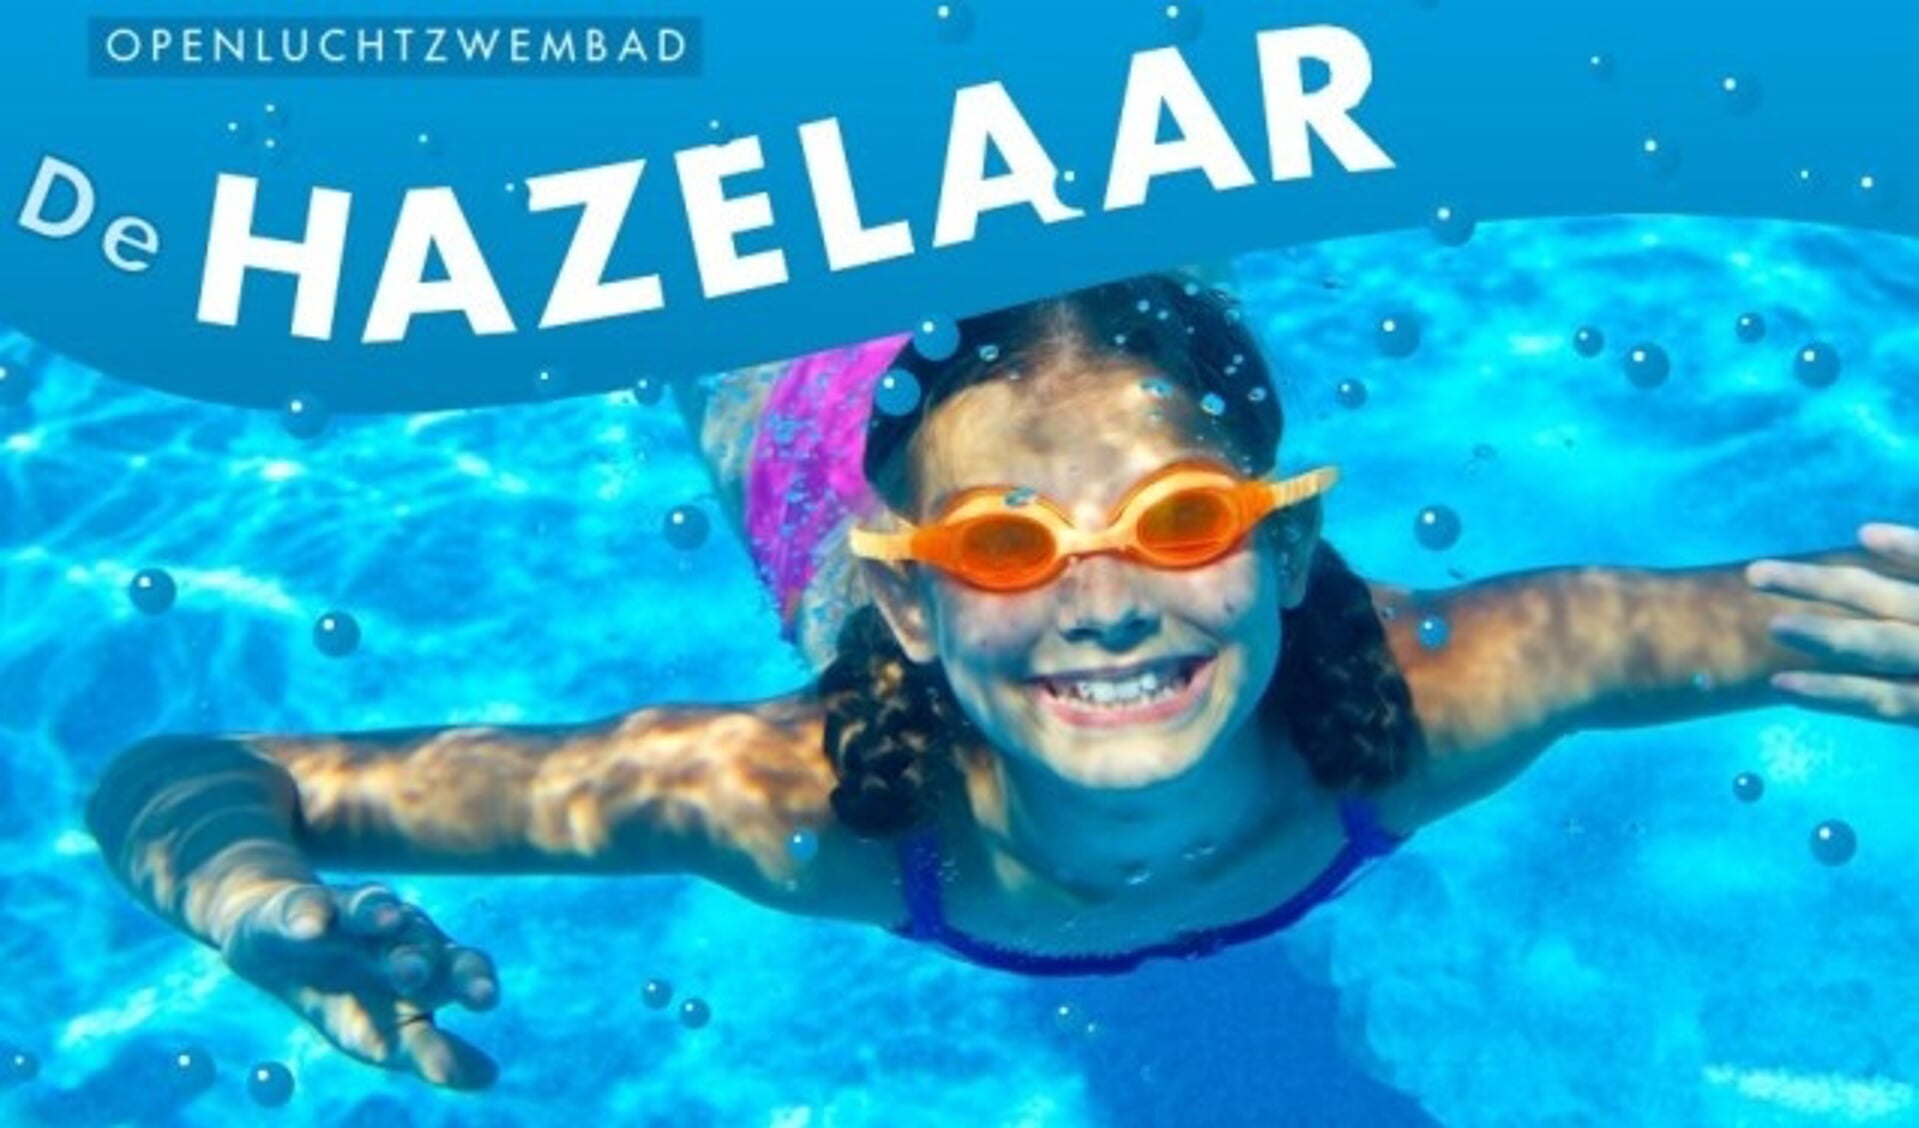 Zwembad de Hazelaar wordt klaargemaakt voor de zomer!